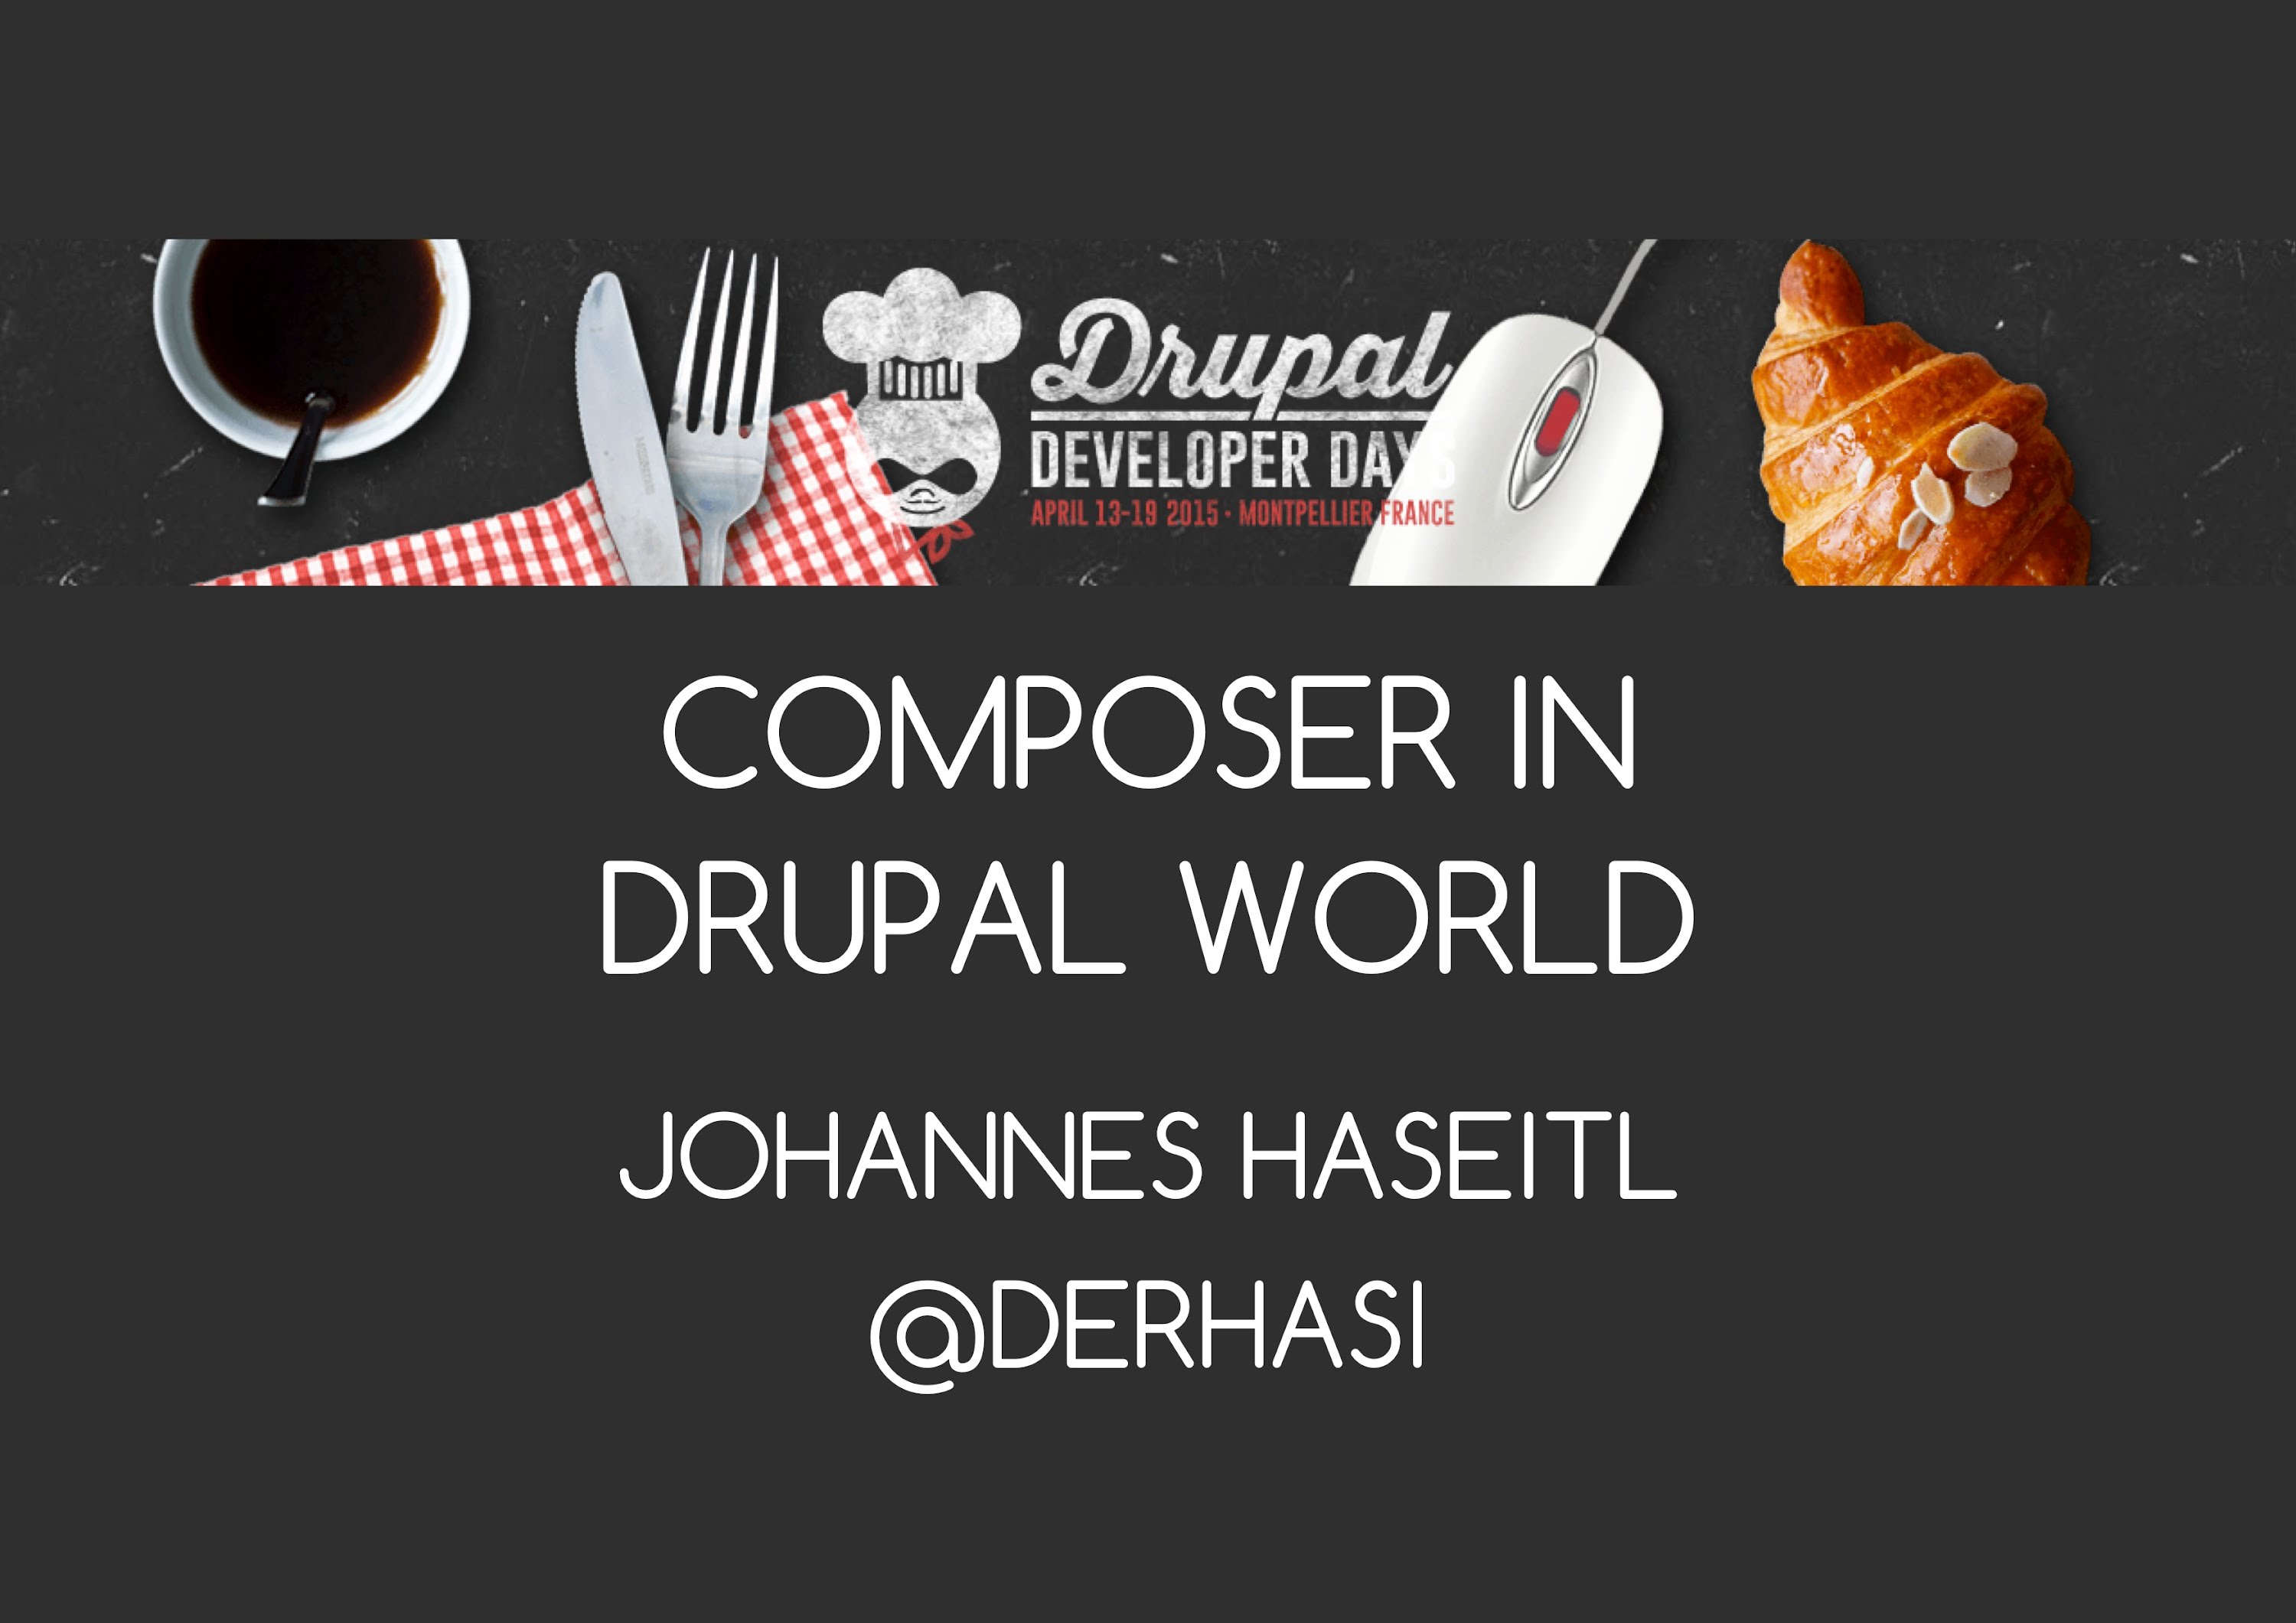 Step 1: Sử dụng Composer trong Drupal 8 rất nhiều